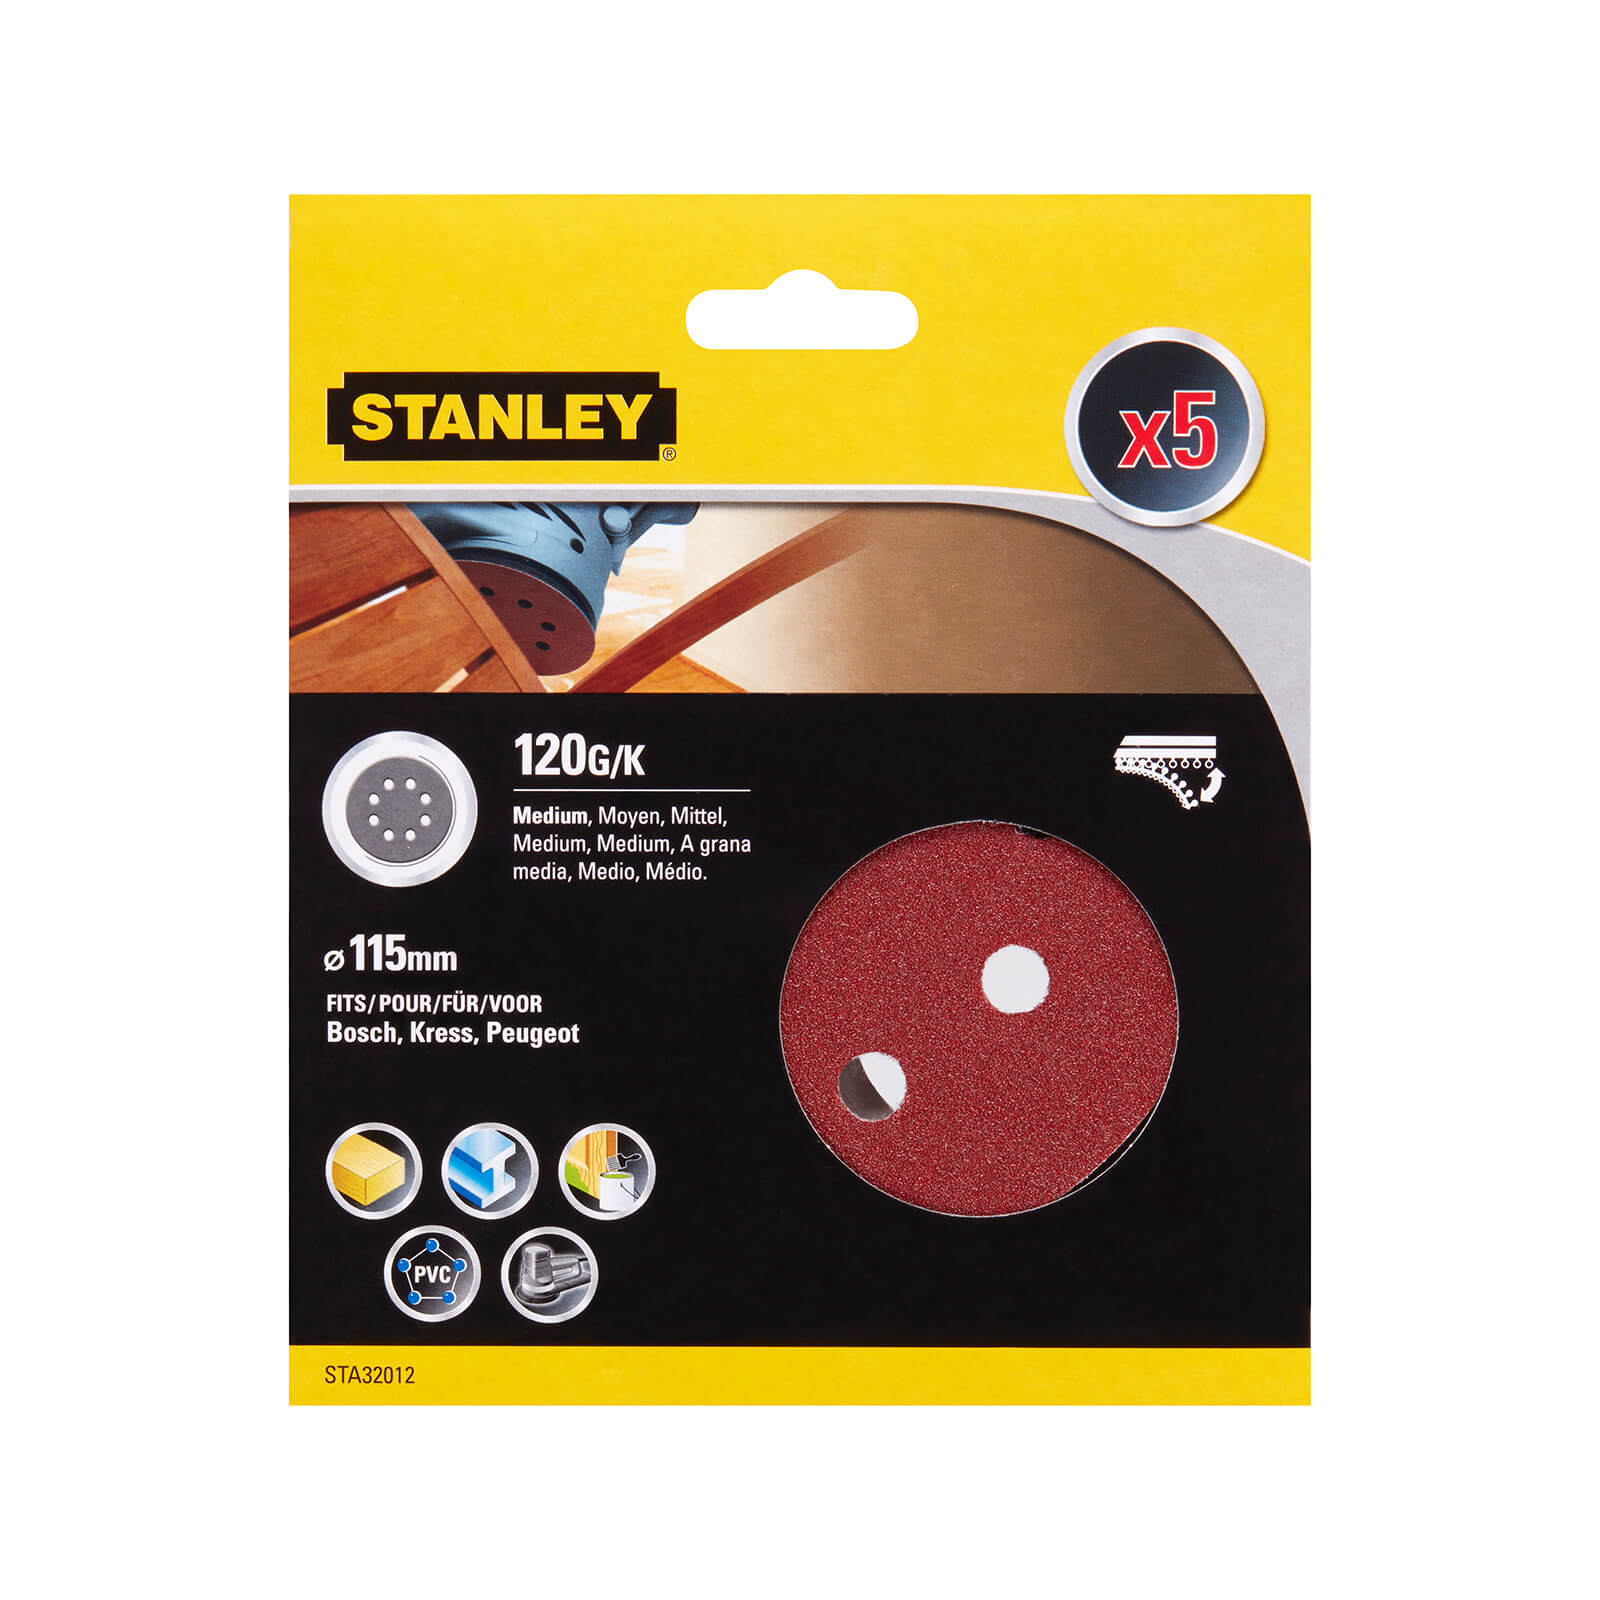 STANLEY - 5x 120g Quick Fit Random Orbital Sanding Discs 115mm